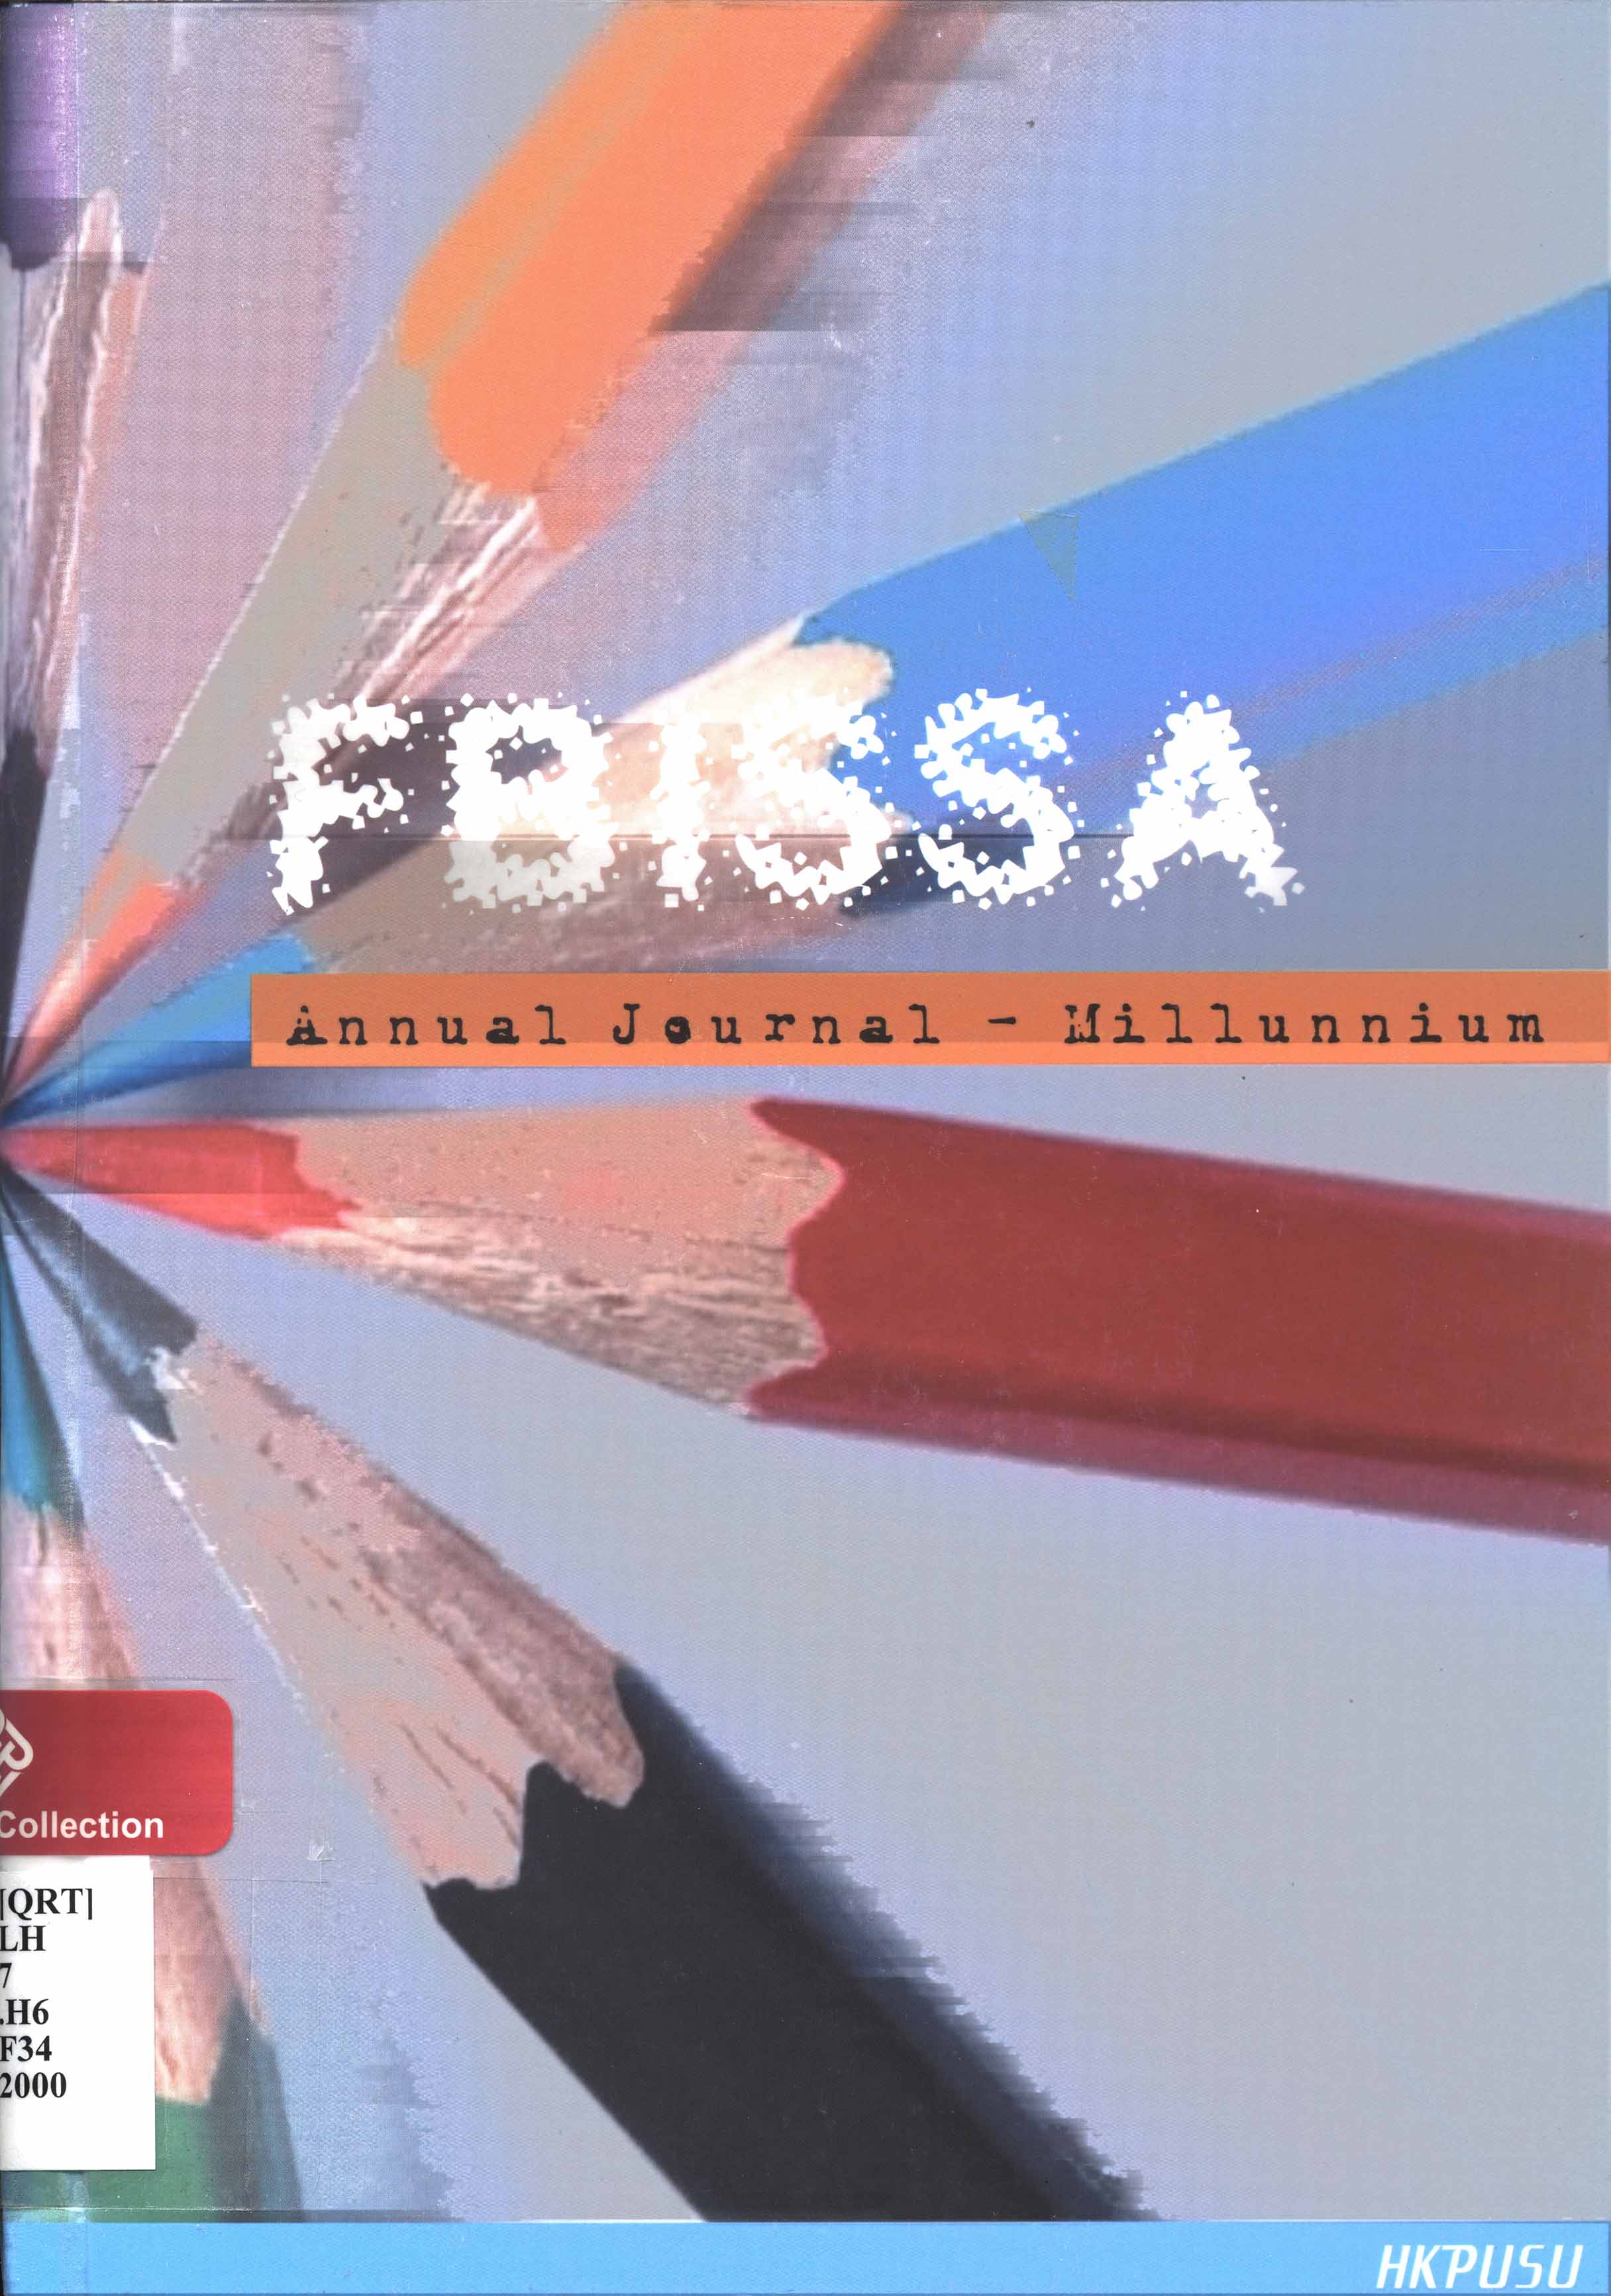 FBISSA annual journal - Millunnium 2000